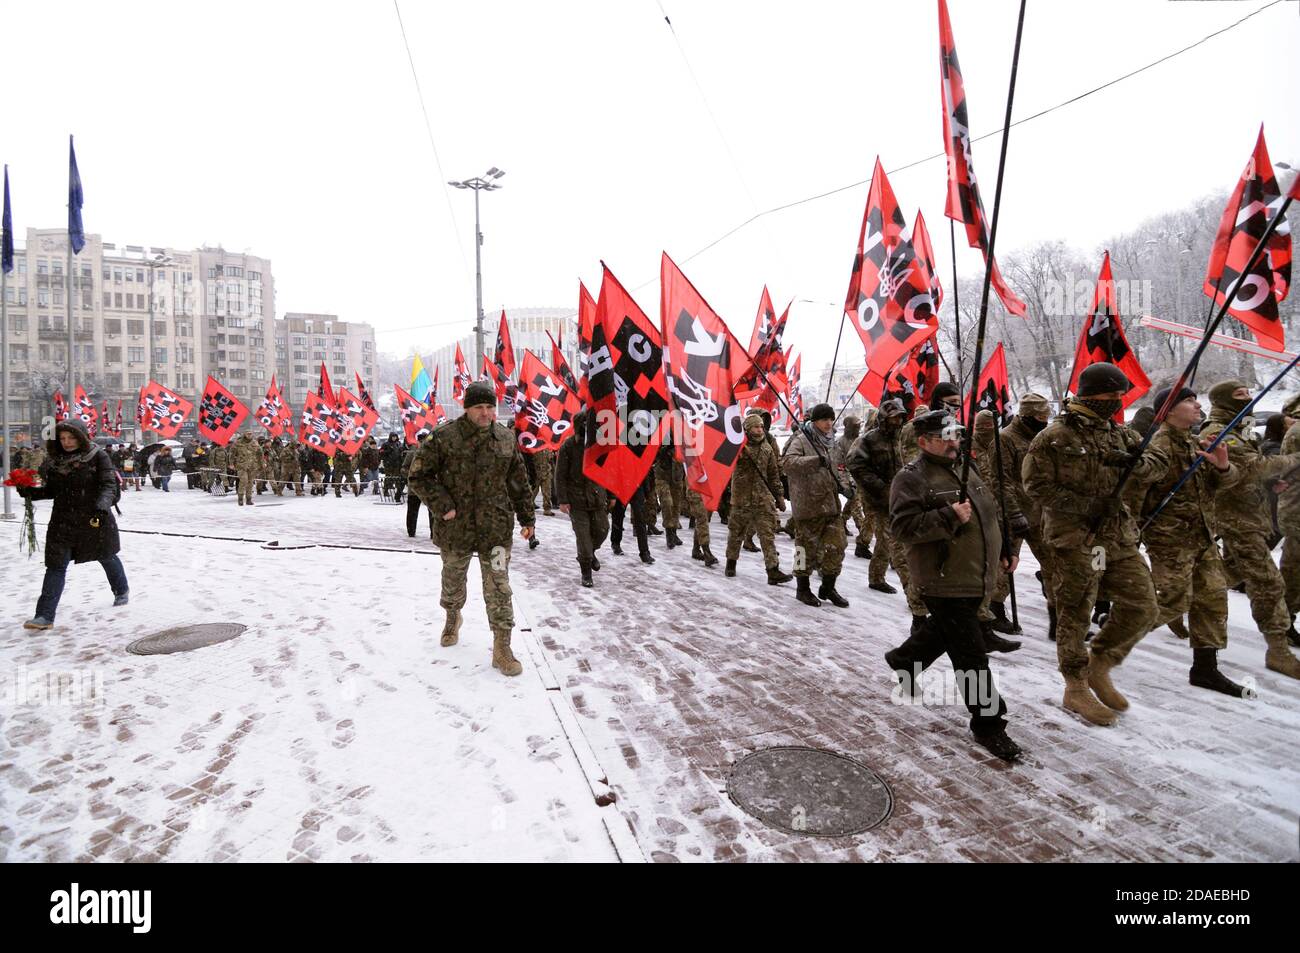 Colonna di lontani-destra ucraini che marciano sulla strada con bandiere In mani per celebrare il compleanno del grande leader nazionalista ucraino Stepanan bande Foto Stock